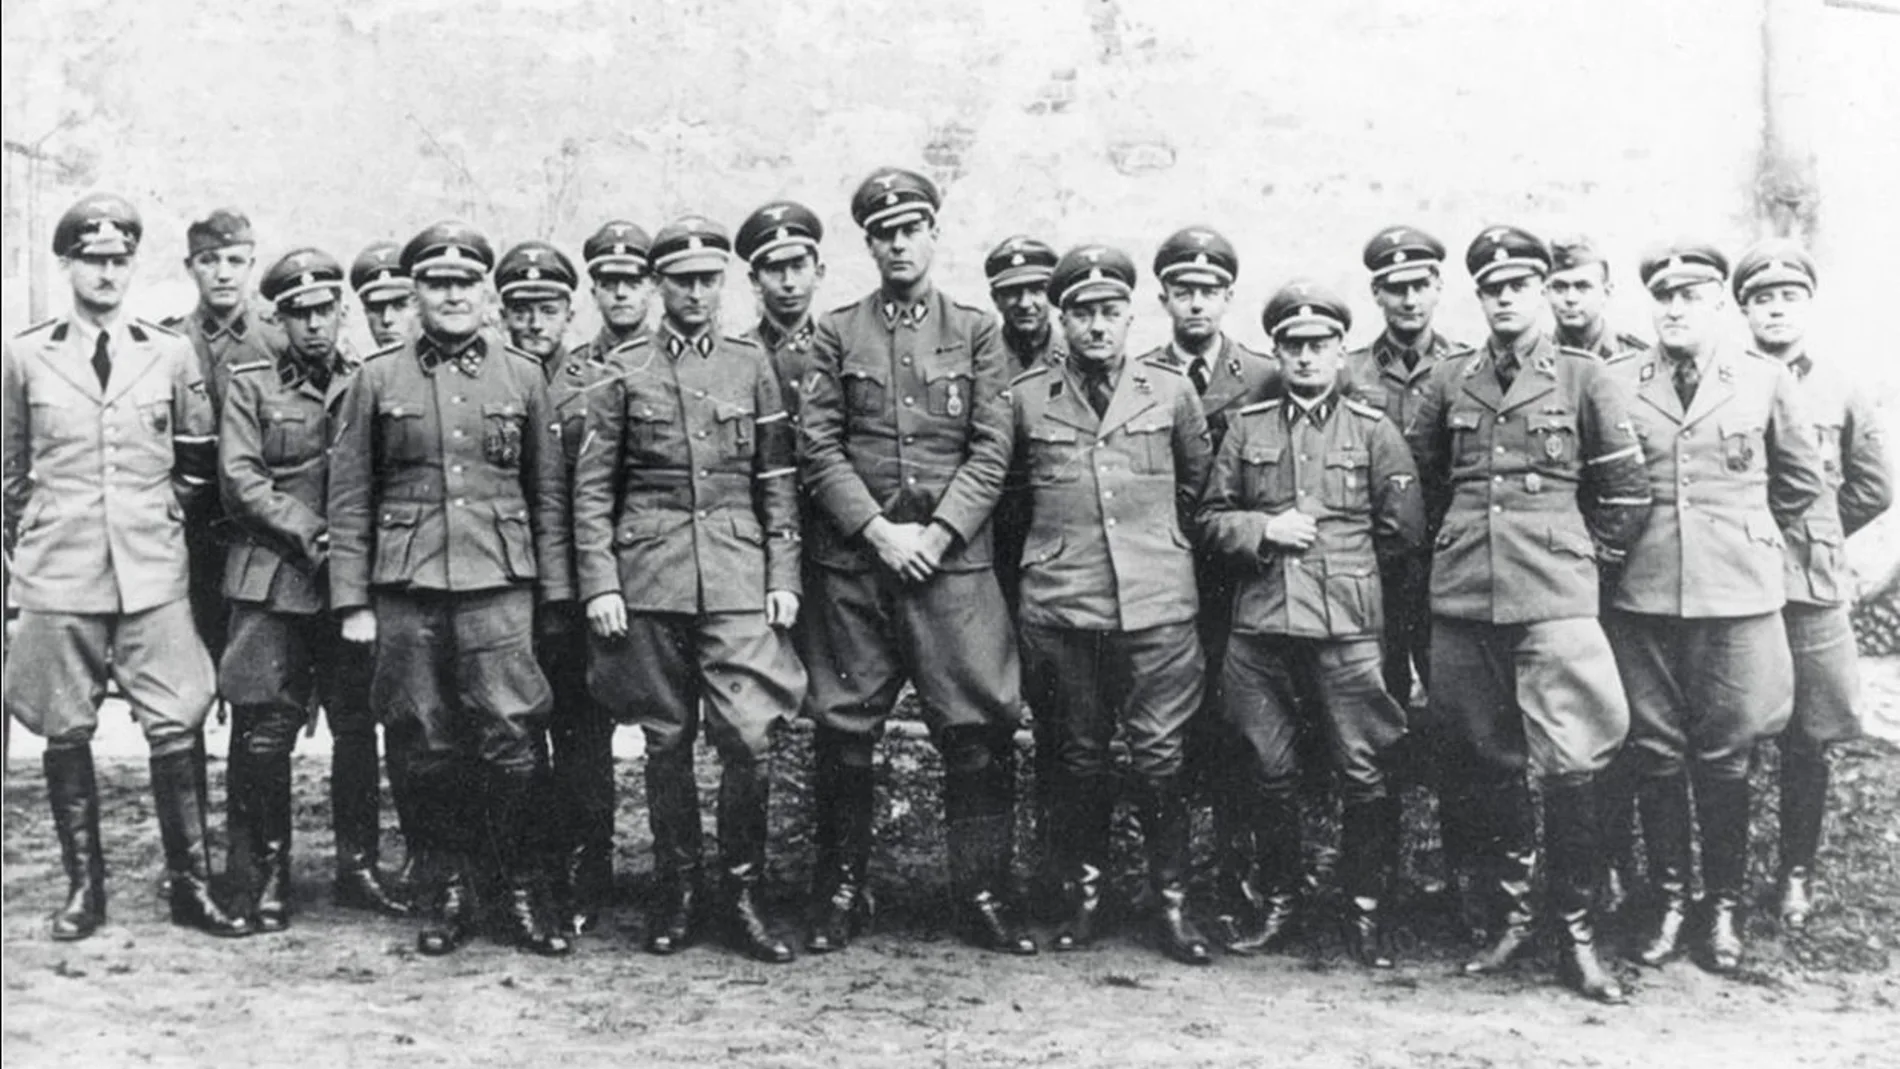 Personal directivo de Selbstschutz Westpreussen, milicias paramilitares de la minoría alemana de Pomerania